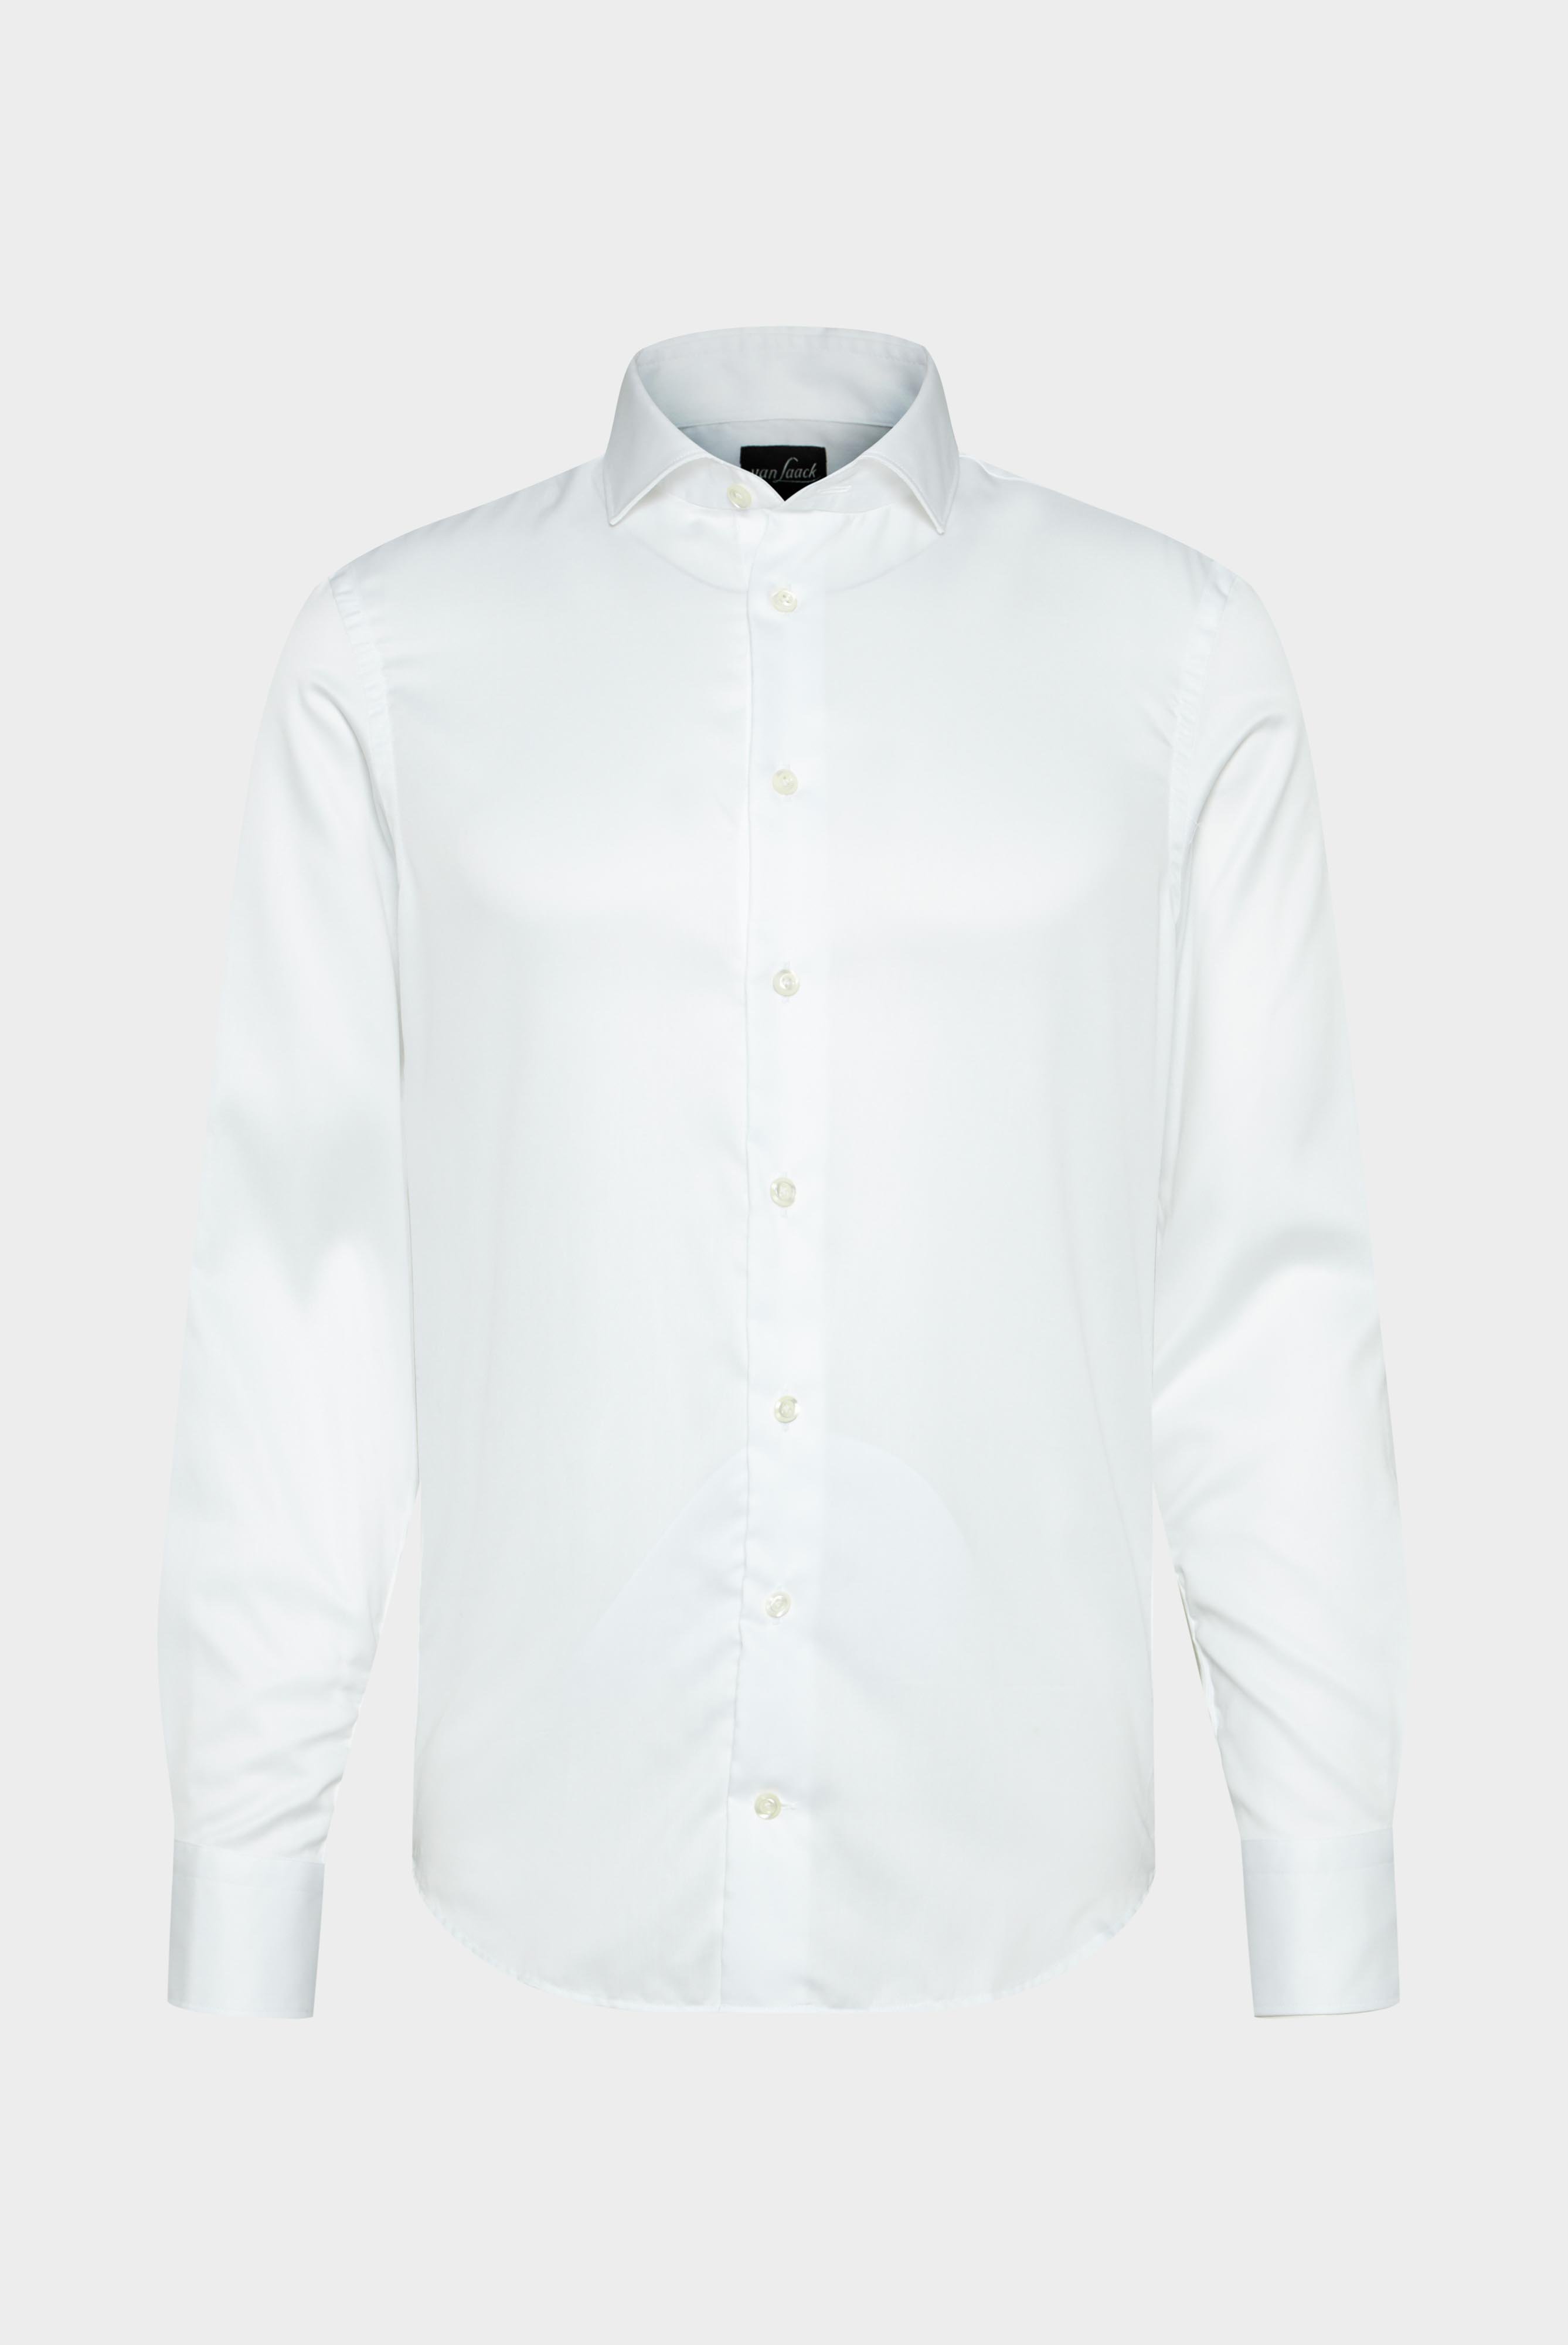 Bügelleichte Hemden+Bügelfreies Hybridshirt mit Jerseyeinsatz Slim Fit+20.2553.0F.132241.000.38